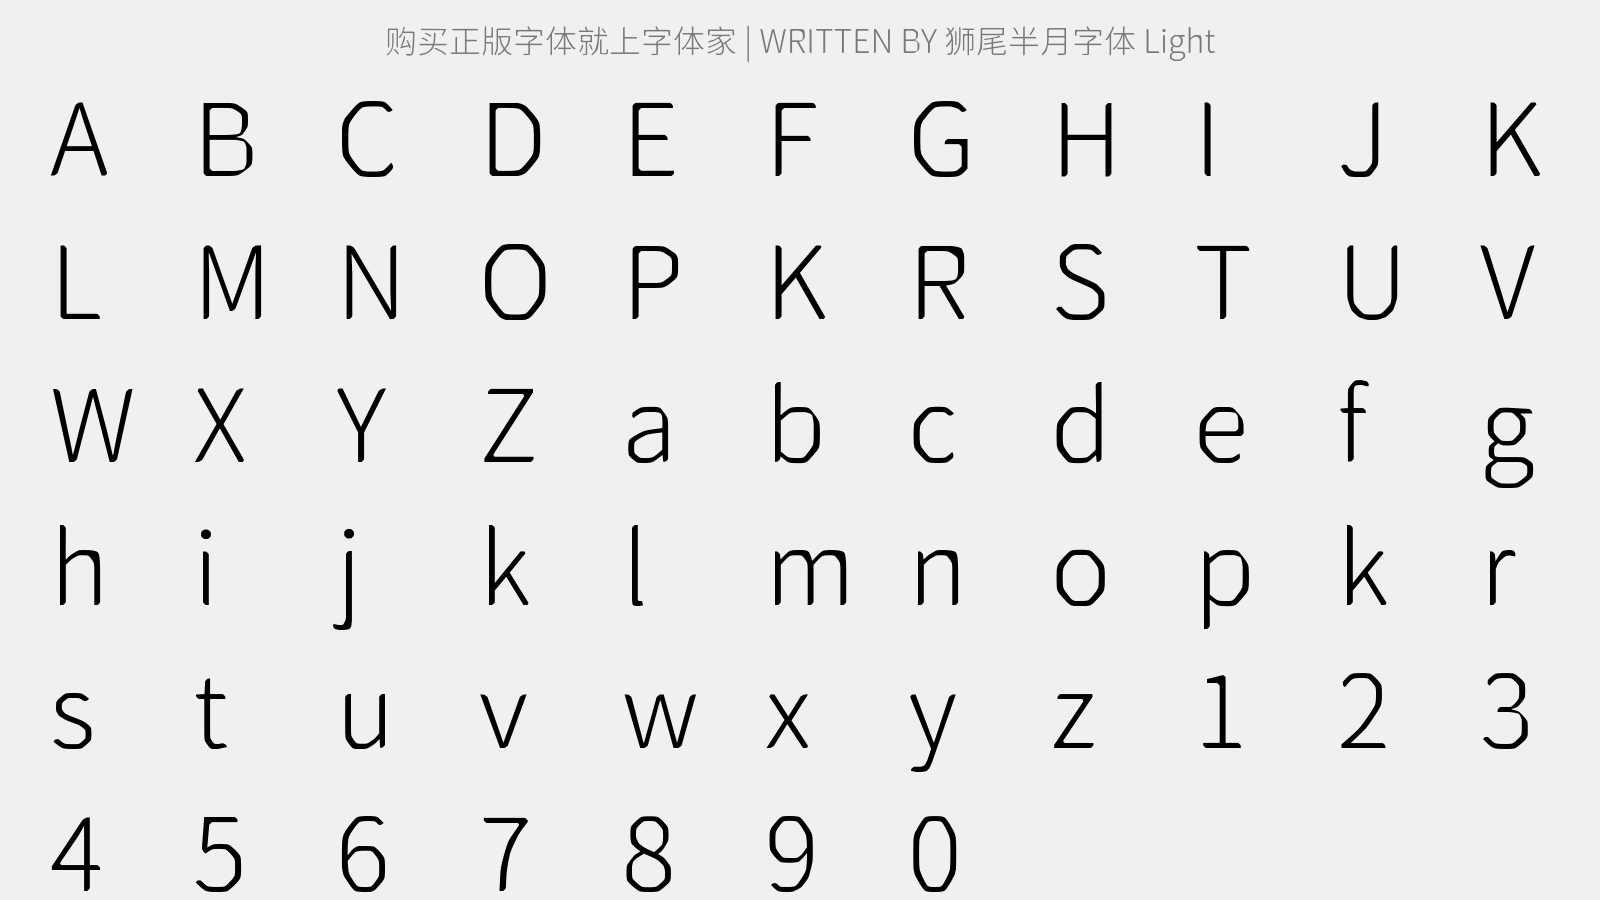 狮尾半月字体 Light - 大写字母/小写字母/数字